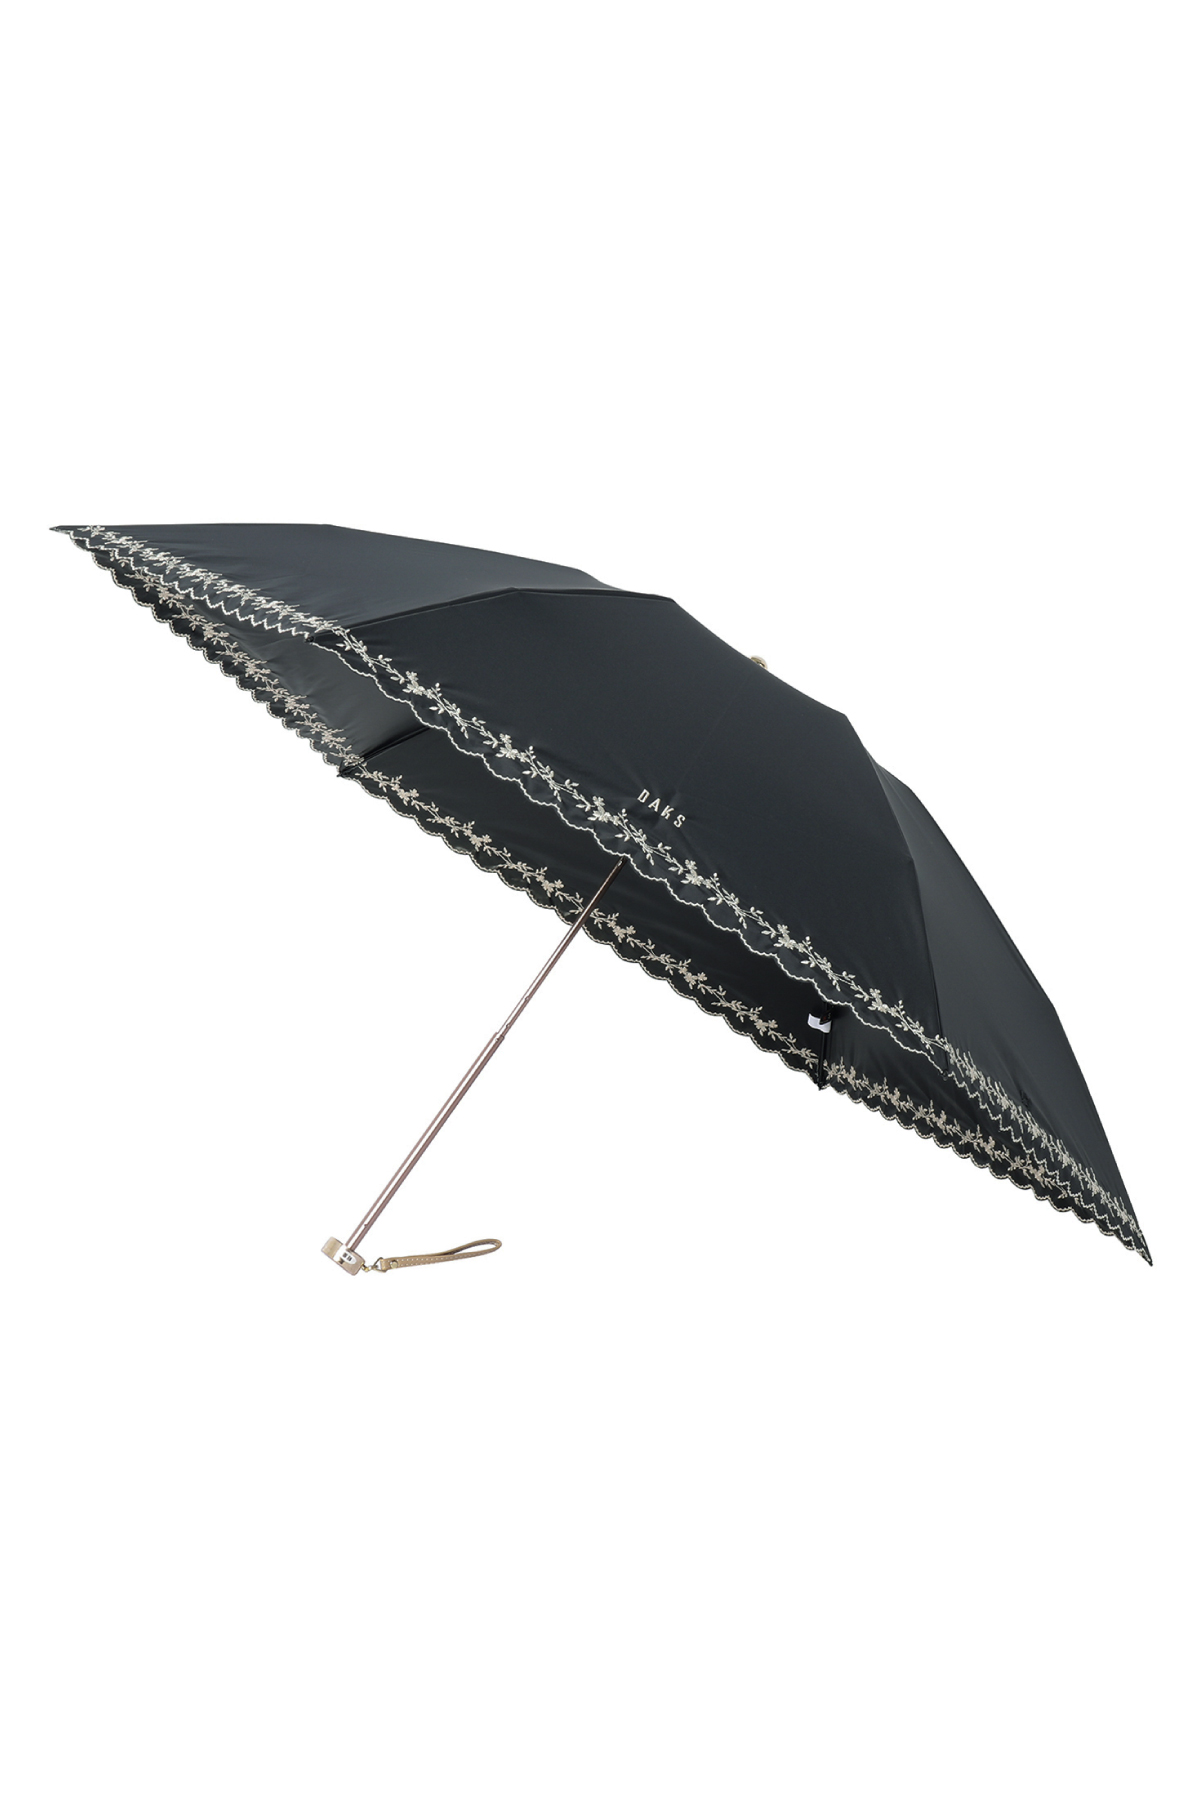 【日傘】ミニ折りたたみ傘裾刺繍 詳細画像 2